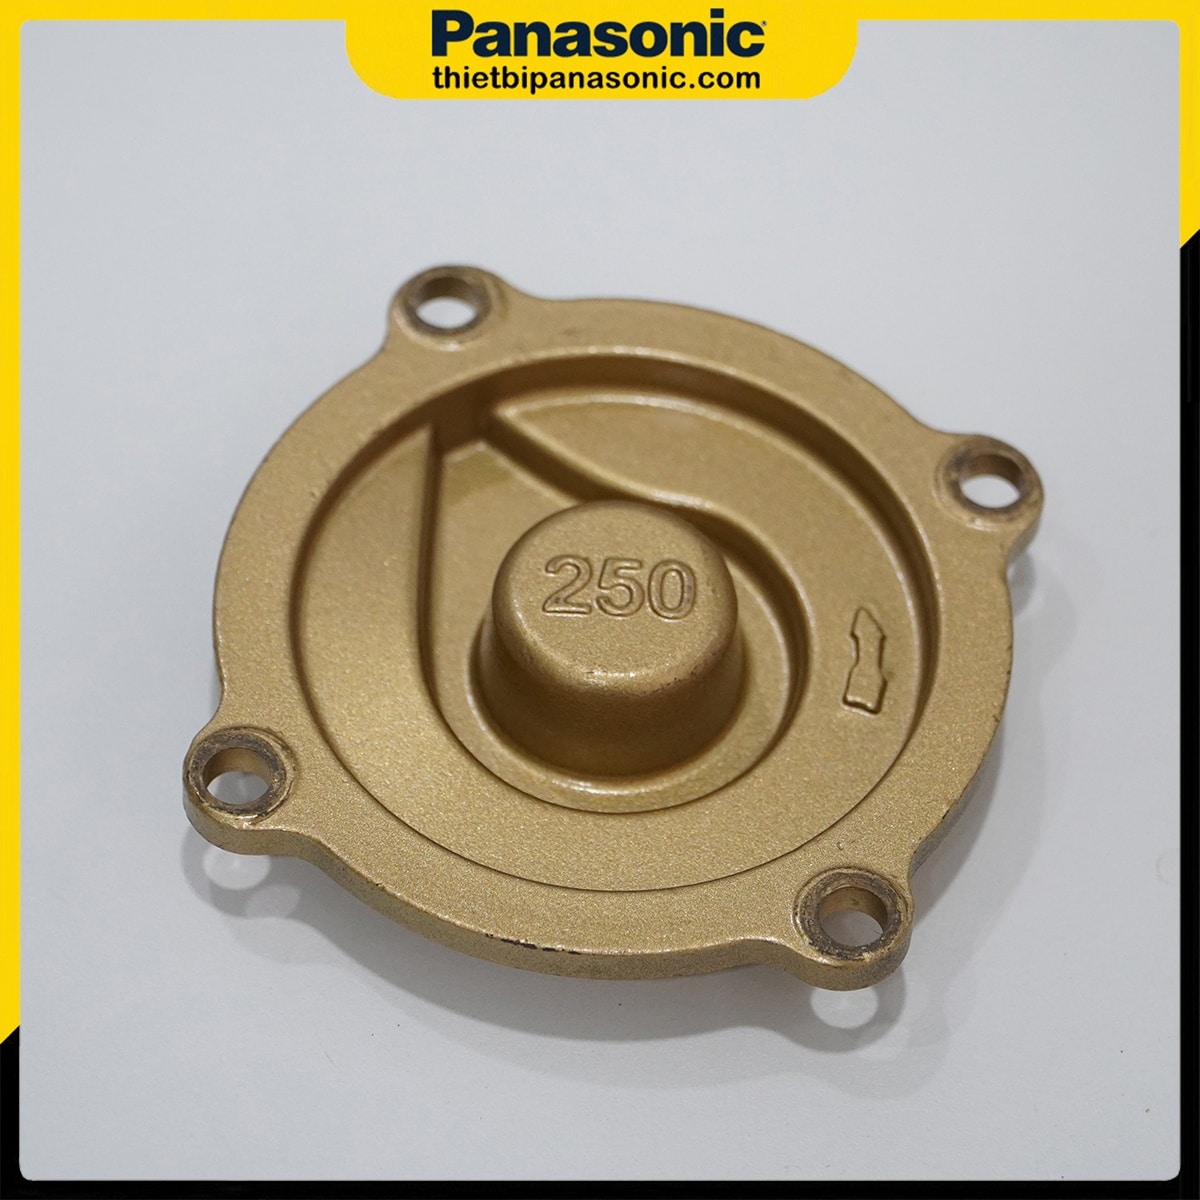 Nắp cánh bơm Panasonic 250W được làm bằng đồng mang lại độ bền bỉ tối ưu